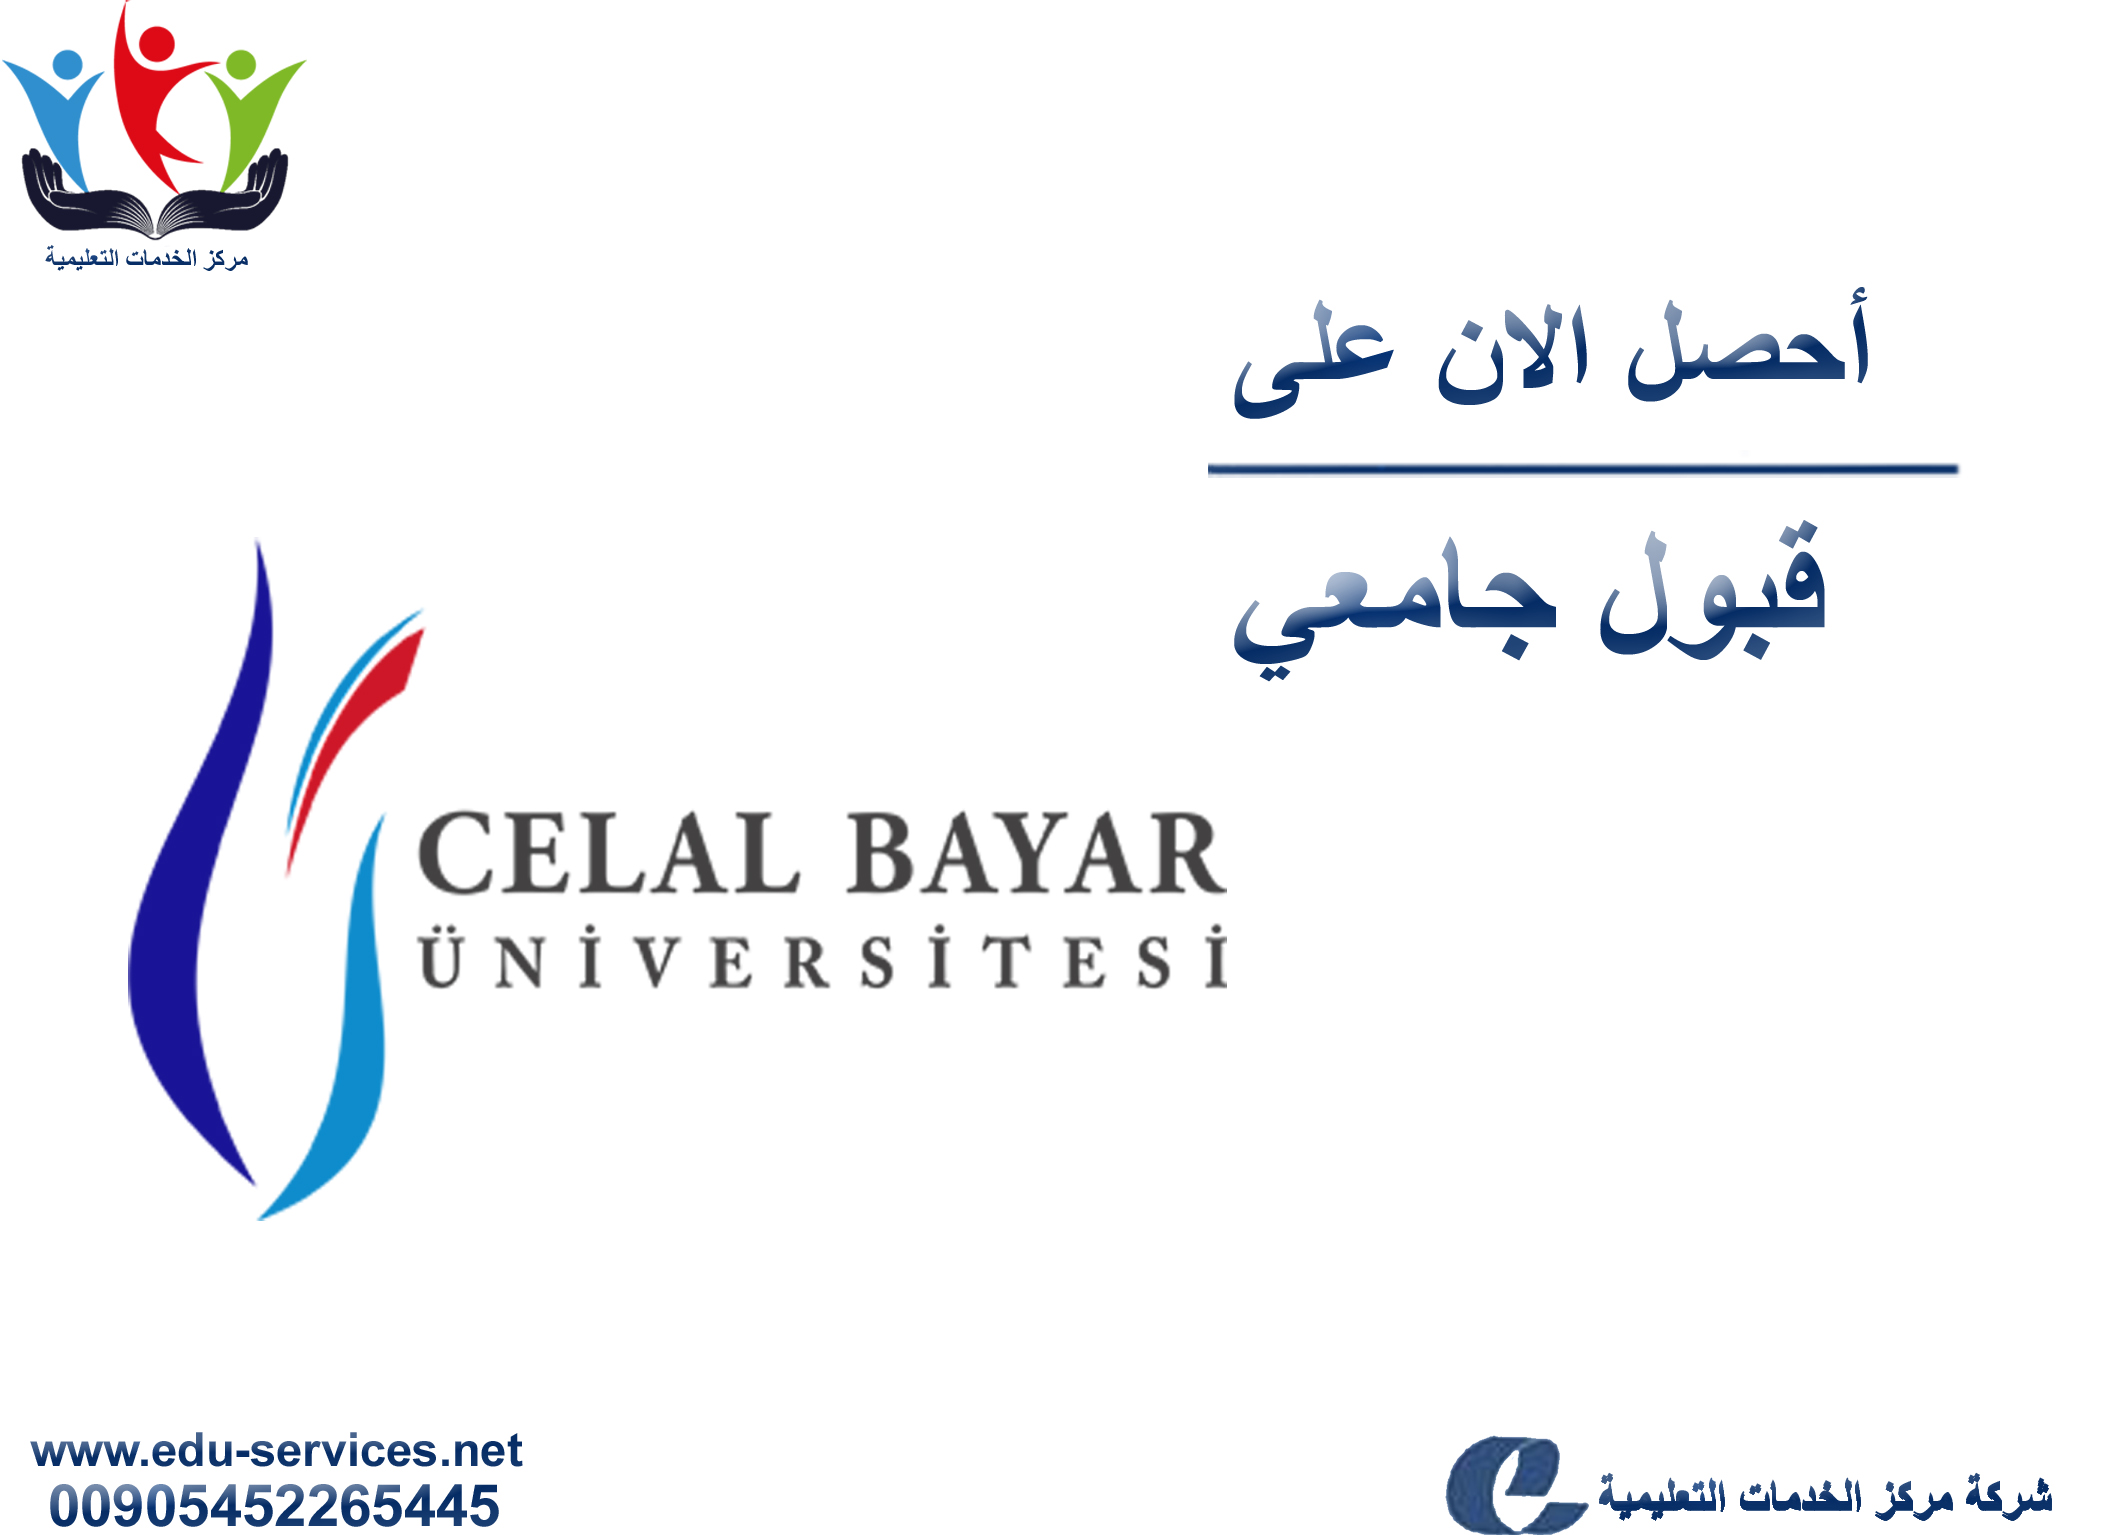 افتتاح التسجيل في جامعة جلال بايار للعام 2018-2019